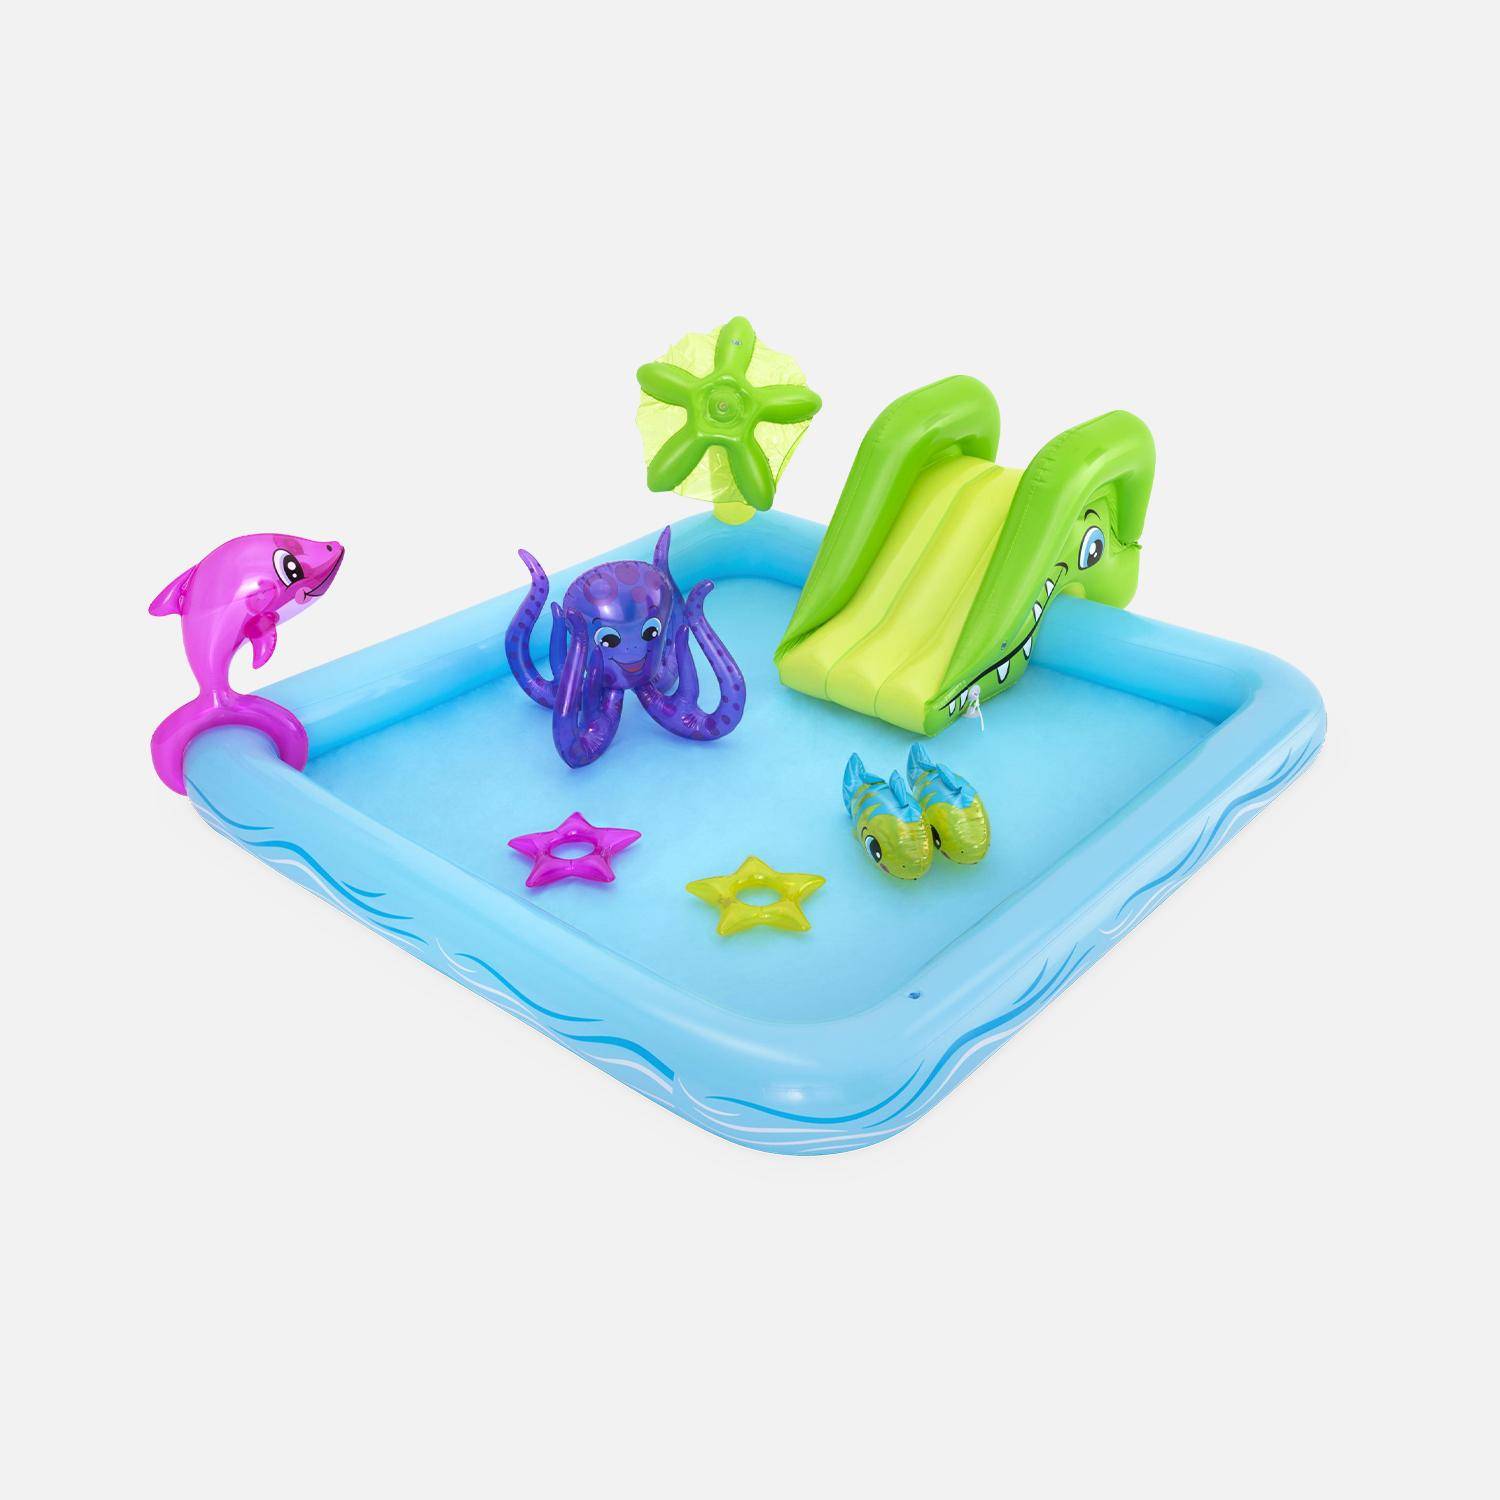 Opblaasbaar baby zwembad met glijbaan, fontein en waterstraal, 239x206x86cm met opblaasbare dolfijn, vis, octopus en ringen Photo1